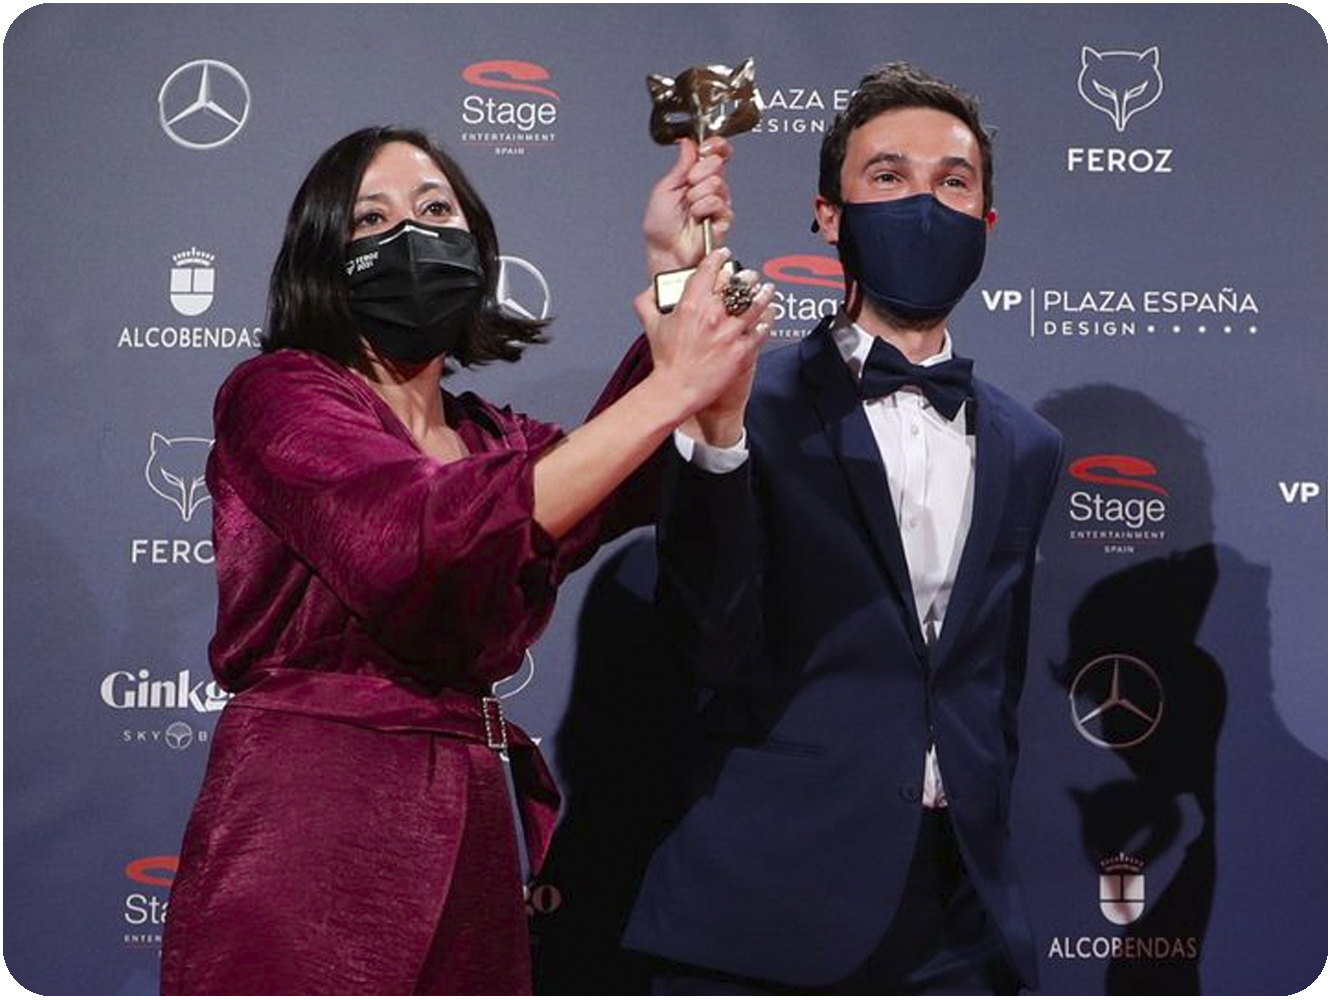  Premios Feroz 2021 | ‘Las Niñas’ y ‘Antidisturbios’ se imponen en una noche regulera marcada por la pandemia